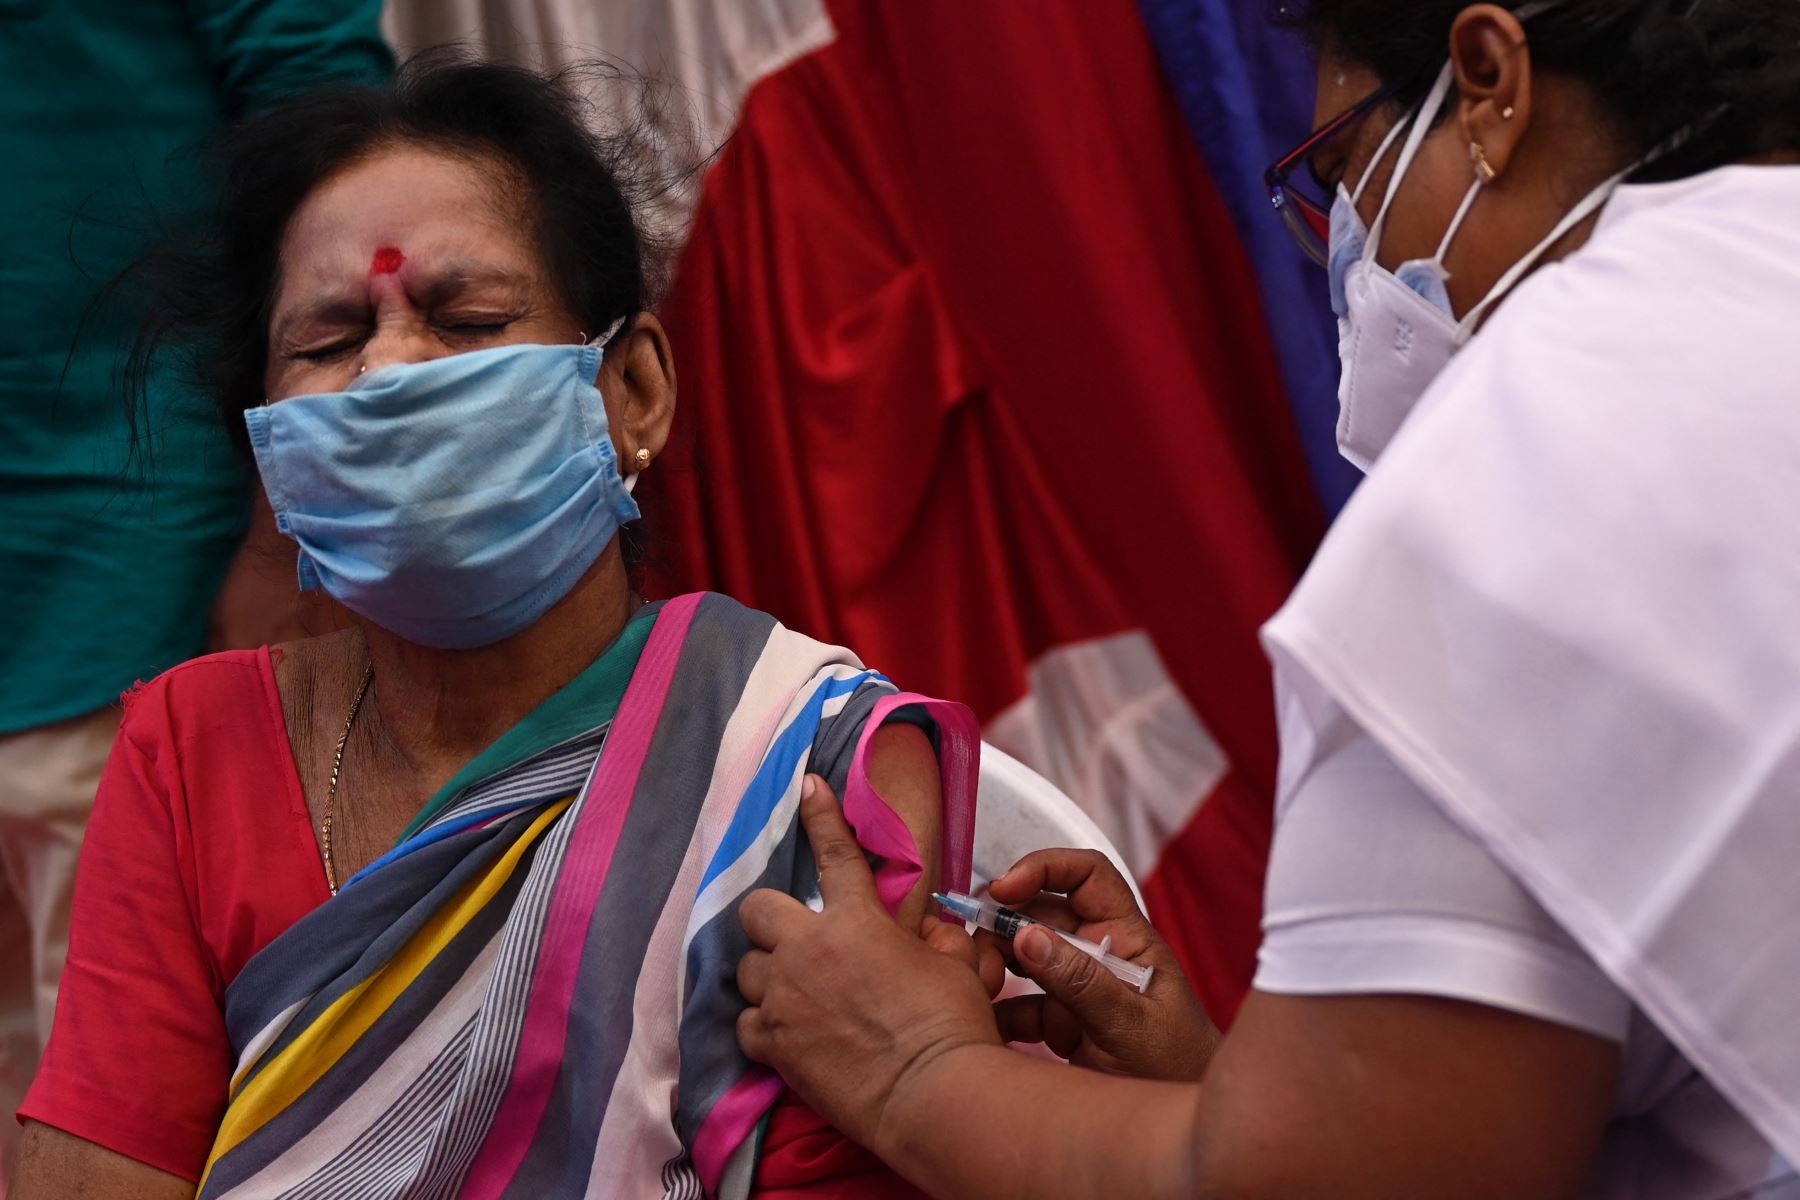 El director general de la OMS subrayó la necesidad de progresar en una cobertura sanitaria universal para hacer frente a nuevas pandemias que puedan llegar en el futuro. Foto: AFP.